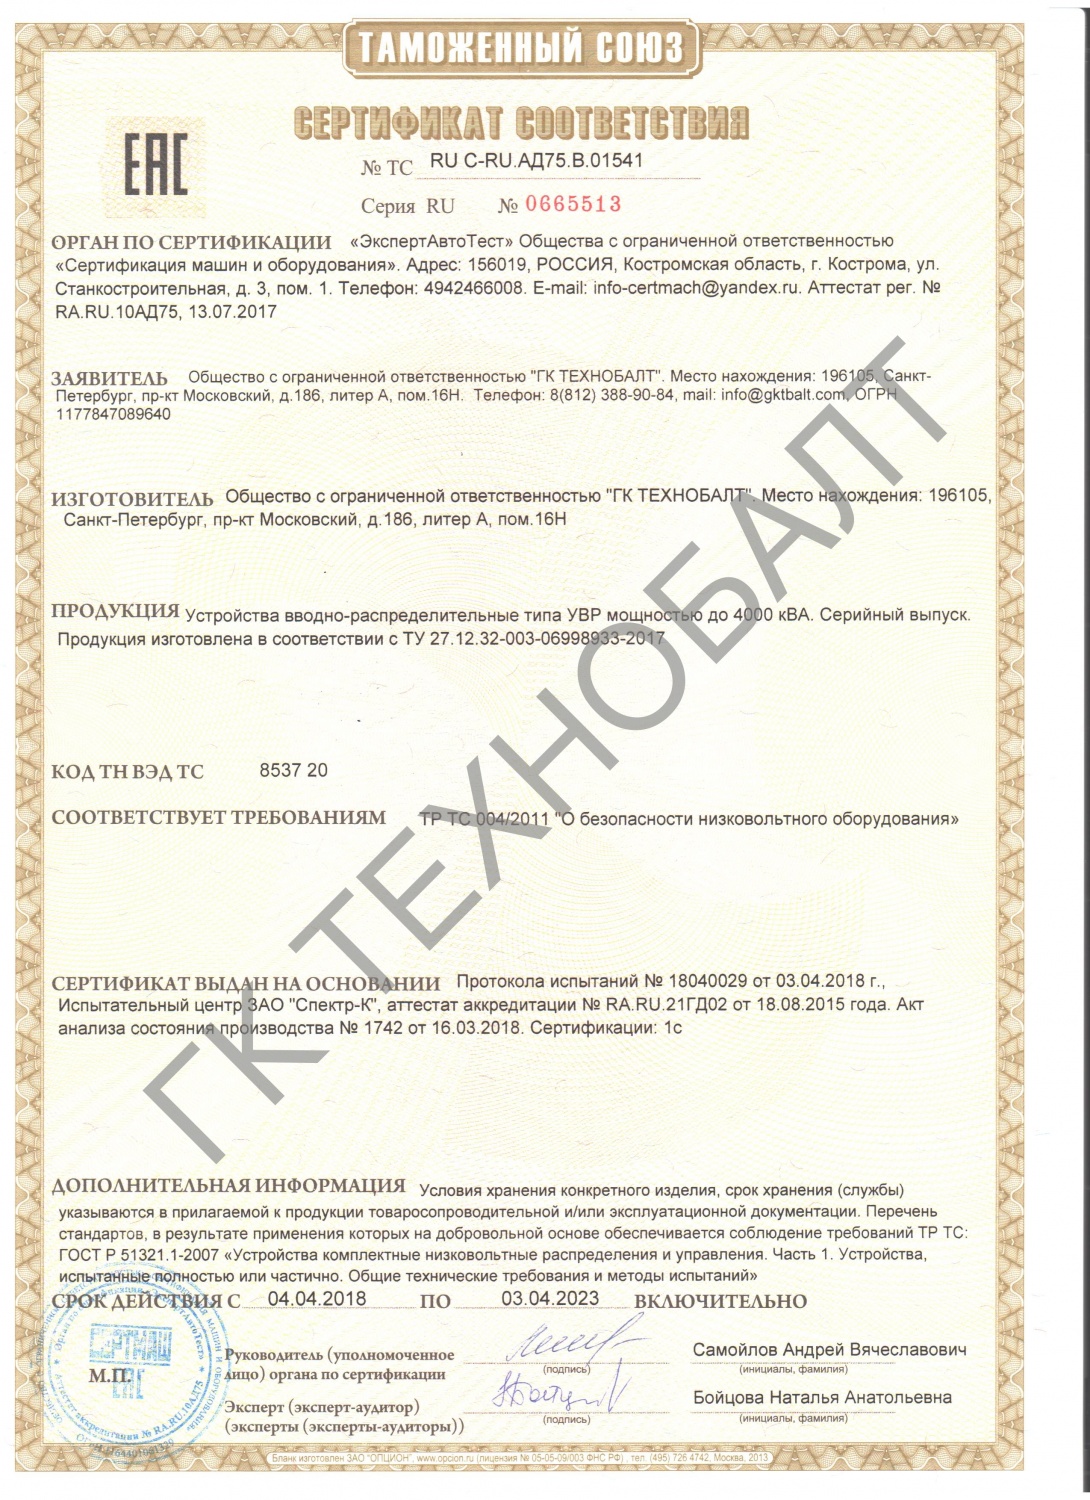 Сертификат соответствия УВР мощностью до 4000 кВА